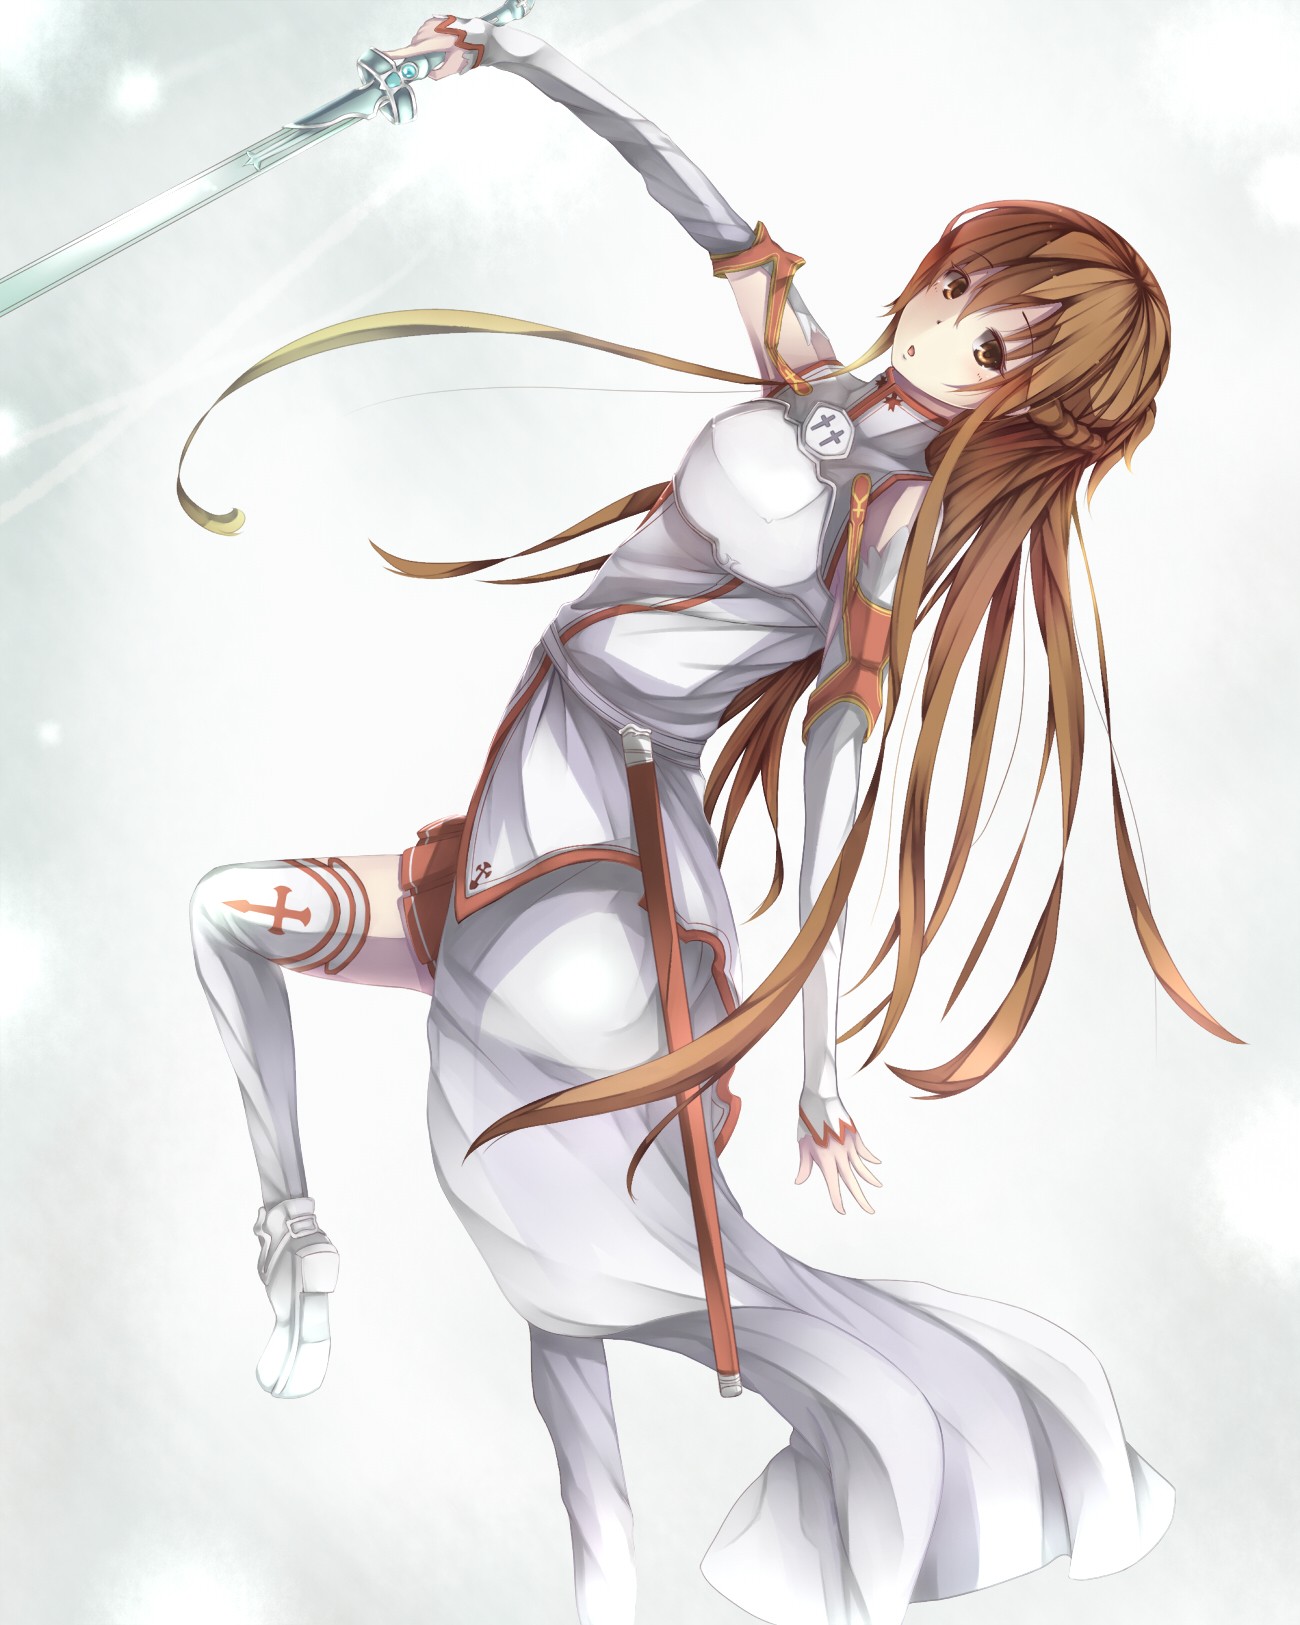 Anime 1300x1625 anime anime girls Sword Art Online armor long hair sword weapon Yuuki Asuna (Sword Art Online) Pixiv women with swords brunette